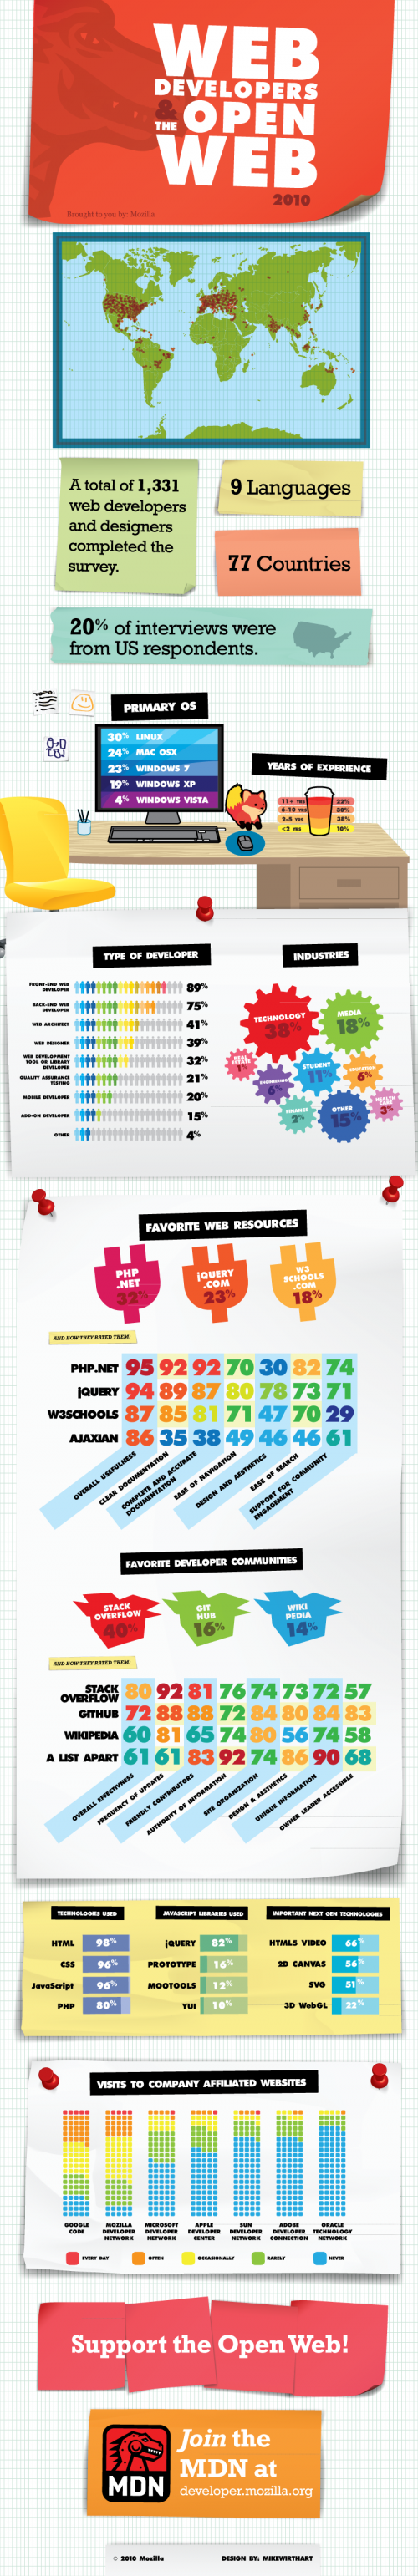 Infographie : Les développeurs Web et l'Open Web